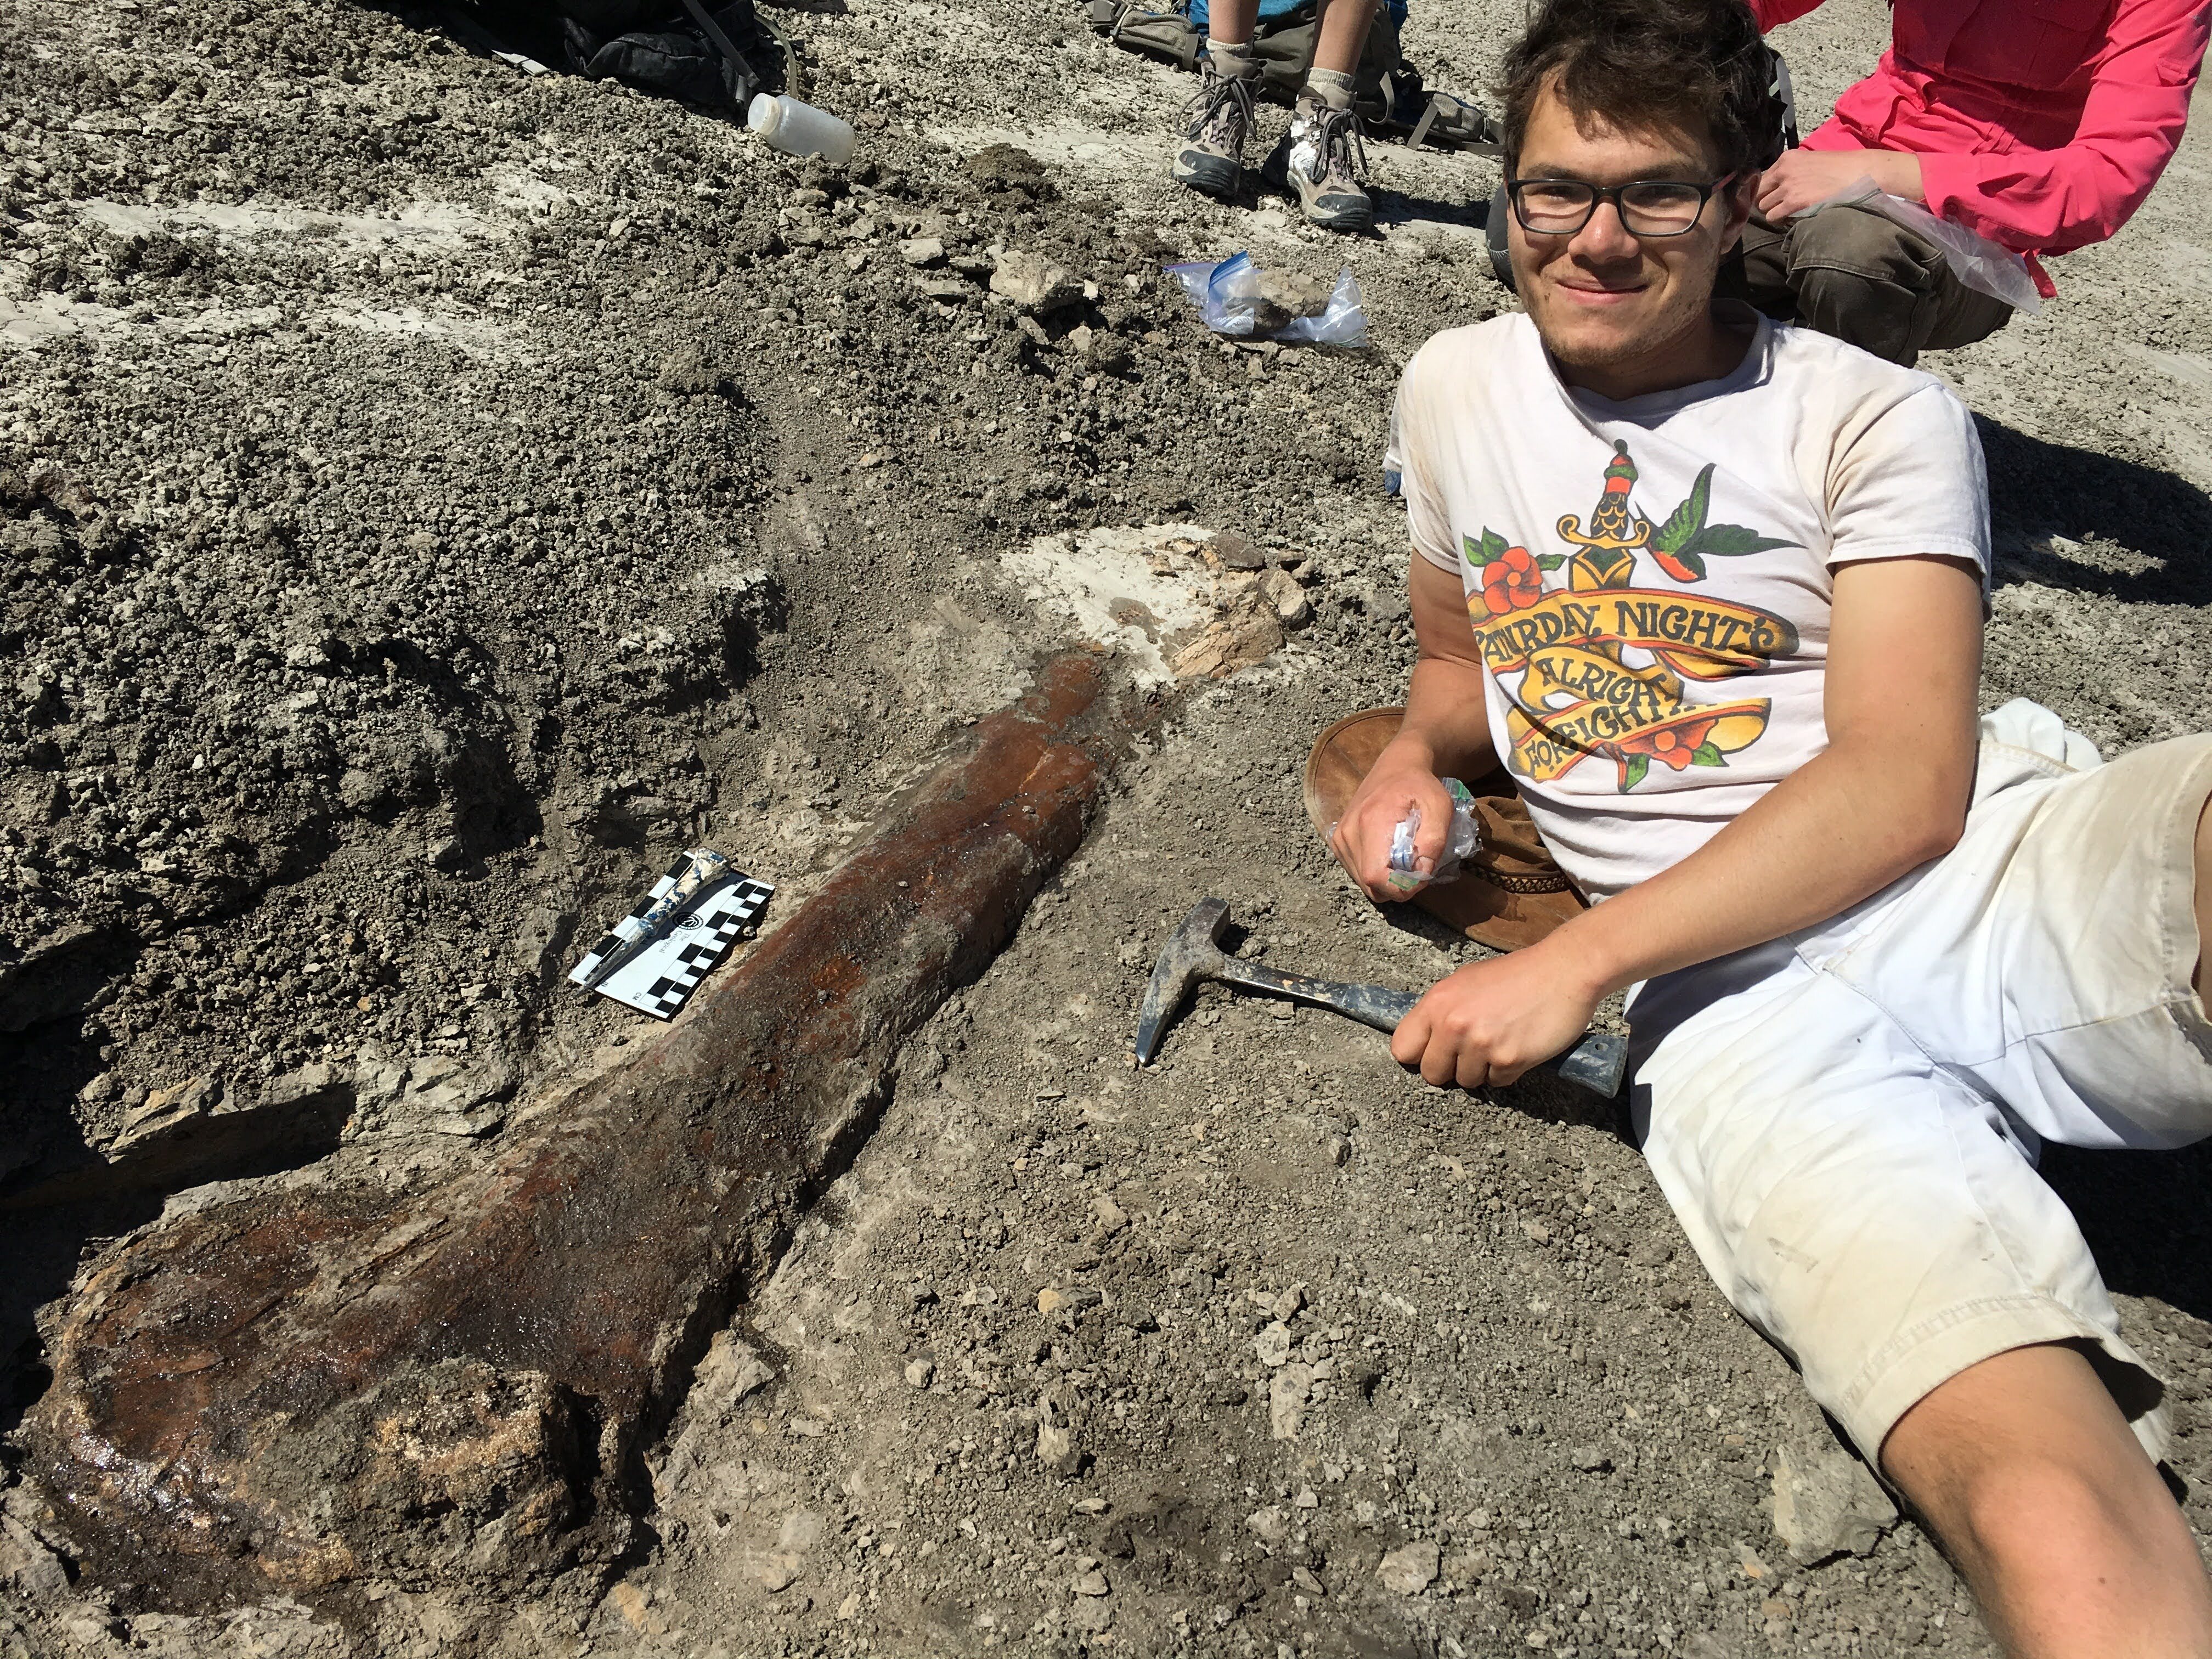 Benjamin Faulkner is lying on the ground next to a large femur bone artifact